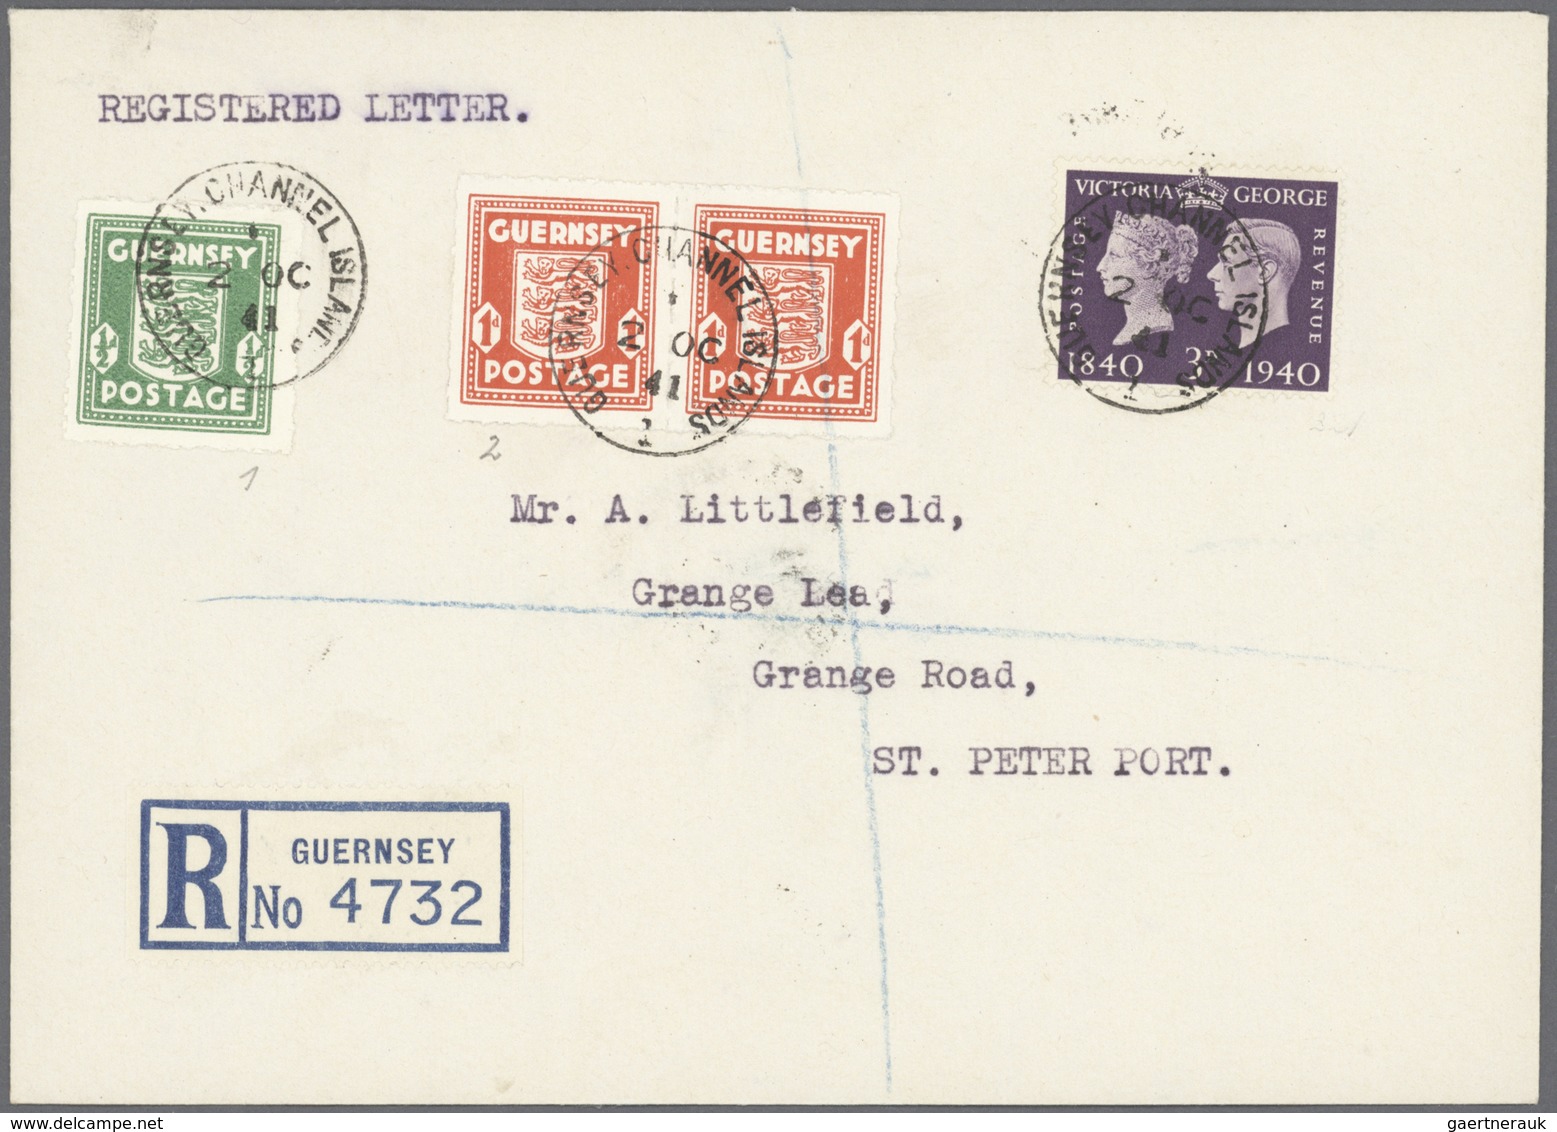 Deutschland: 1860/1945, einige hundert Briefe, Karten und Ganzsachen ab Altdeutsche Staaten bis Deut